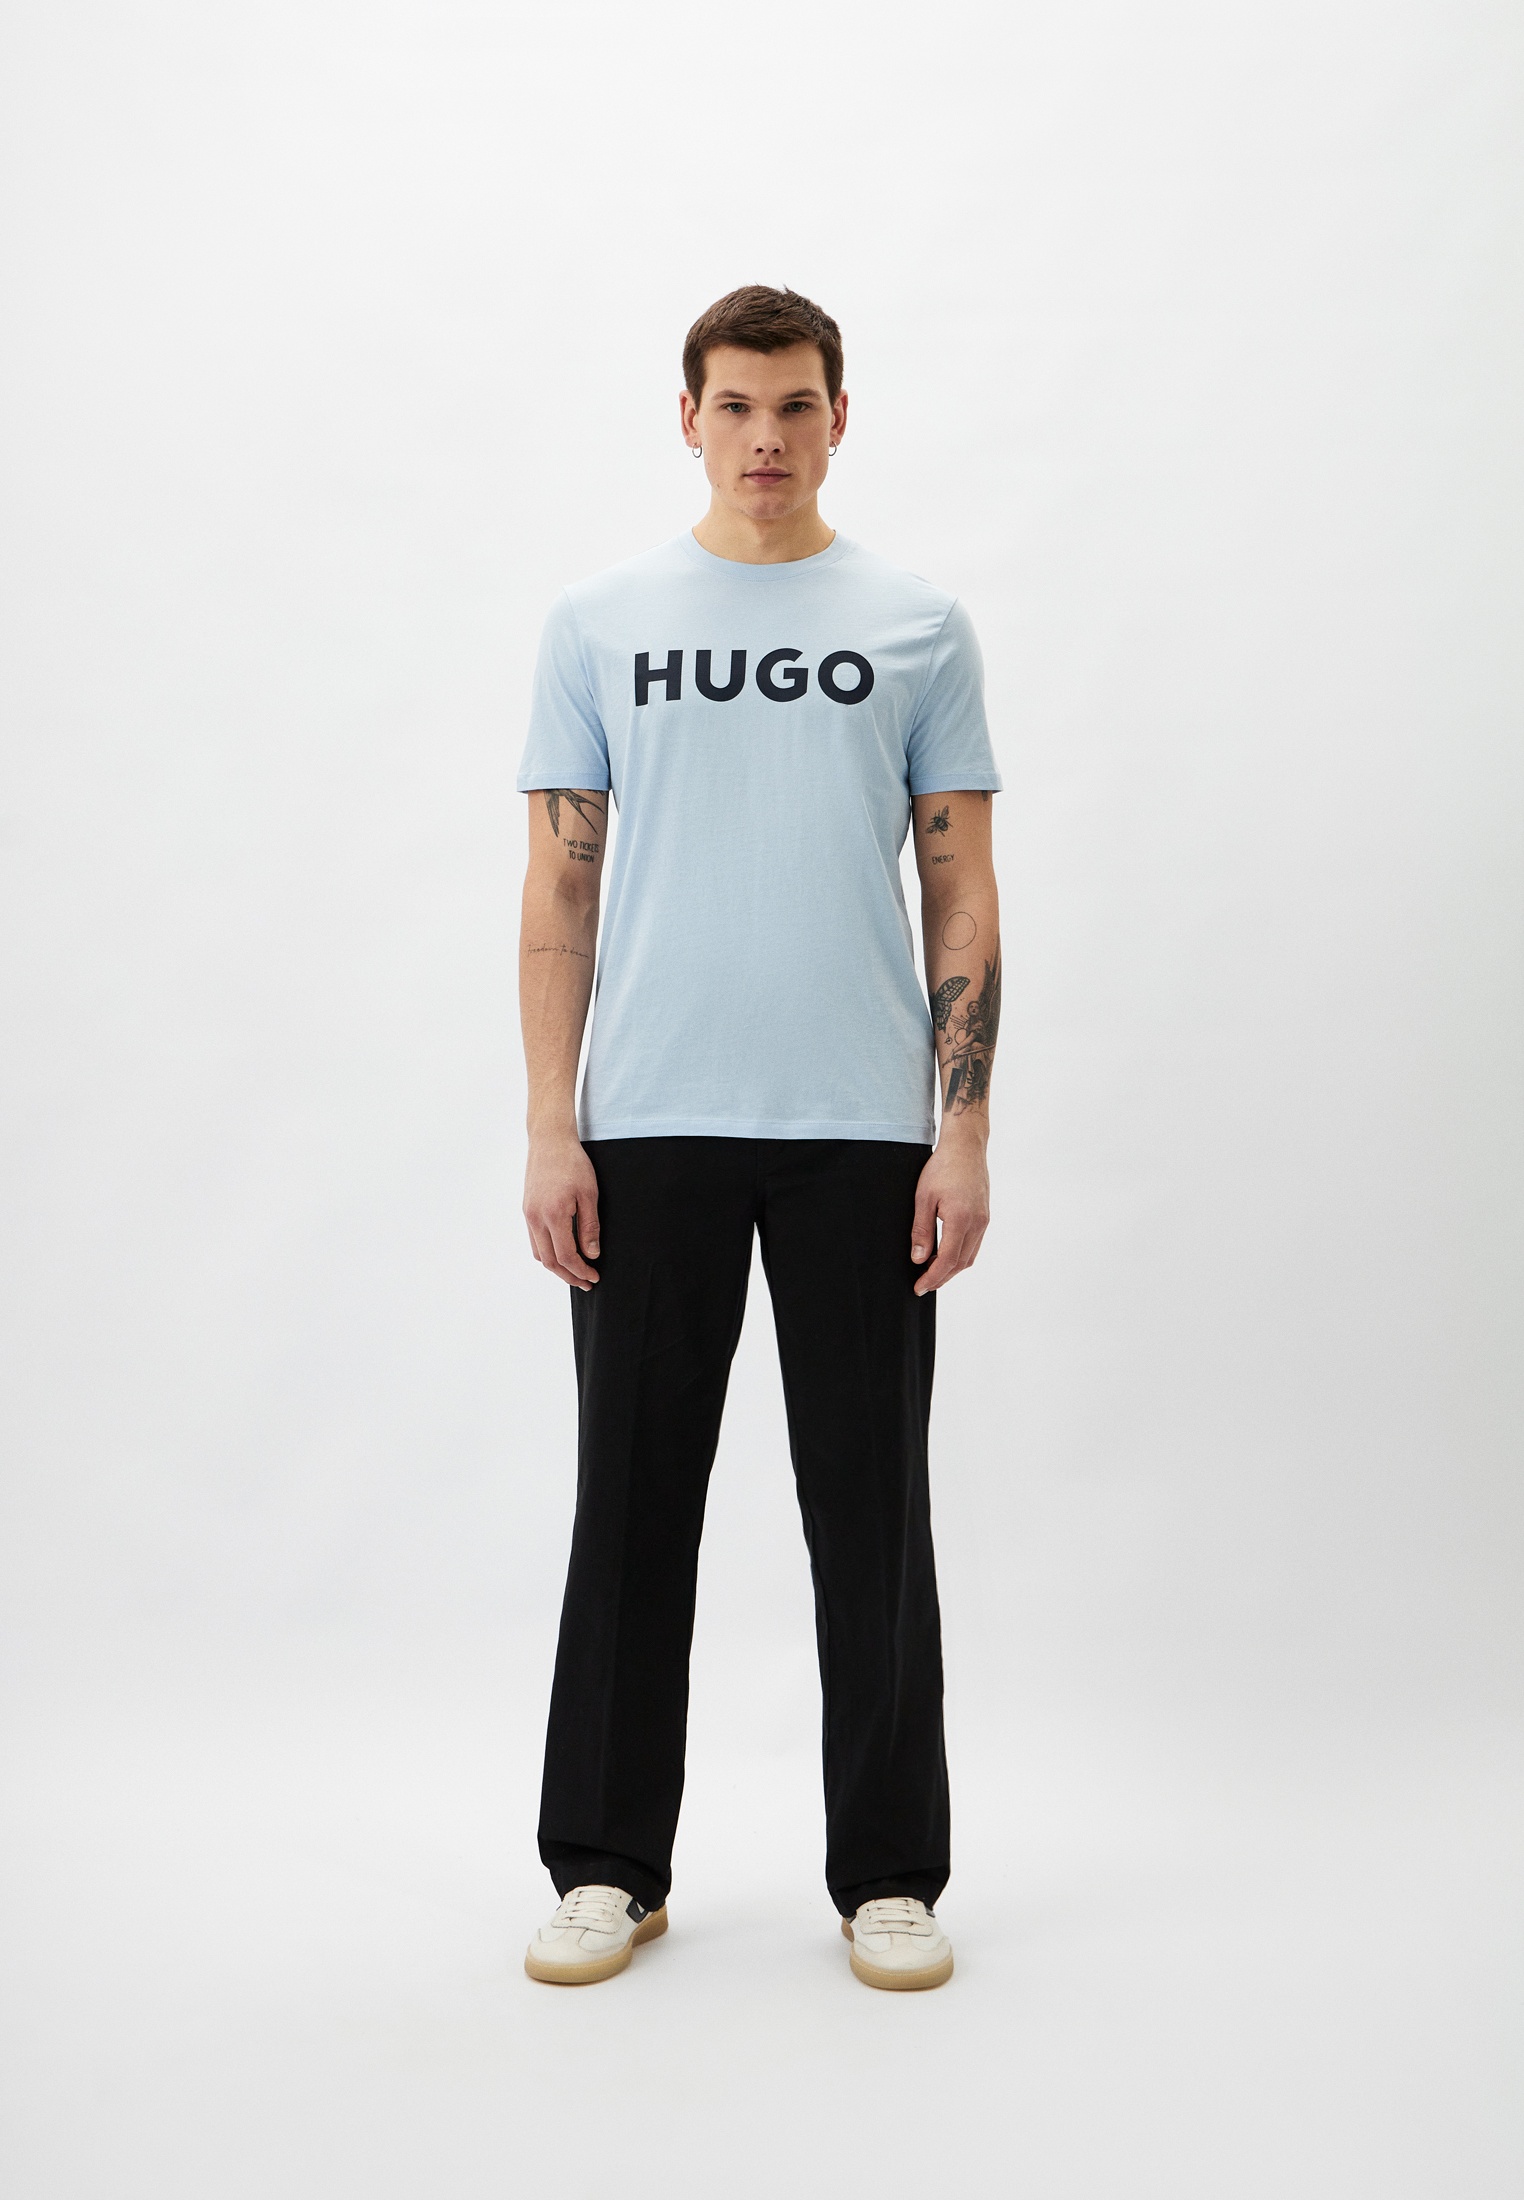 Мужская футболка Hugo (Хуго) 50467556: изображение 2